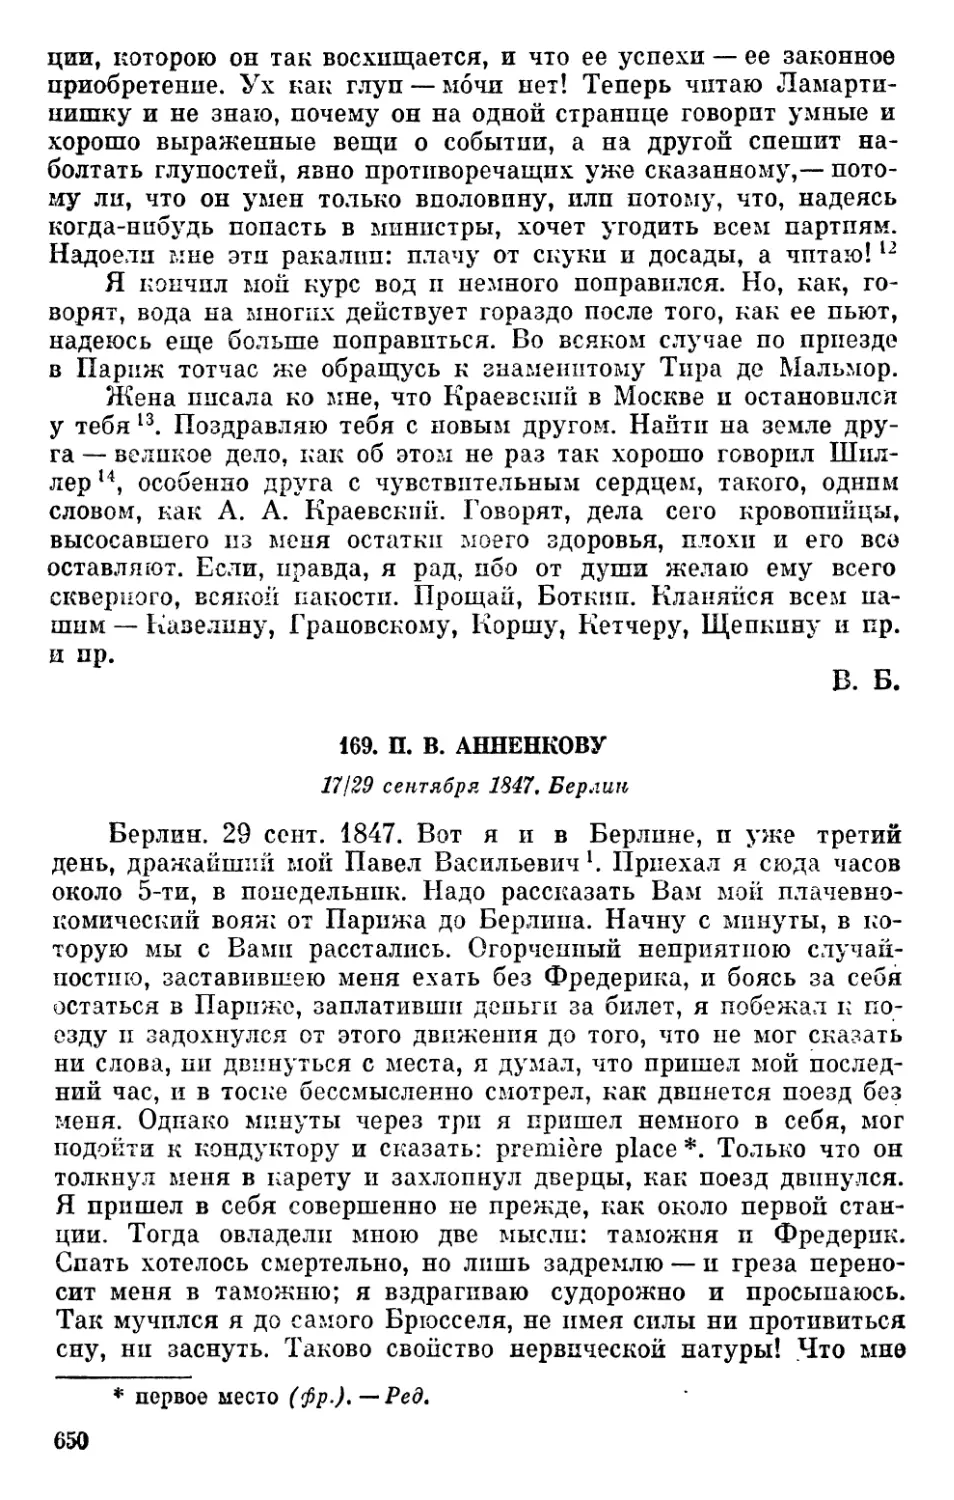 169. П. В. Анненкову. 17/29 сентября 1847